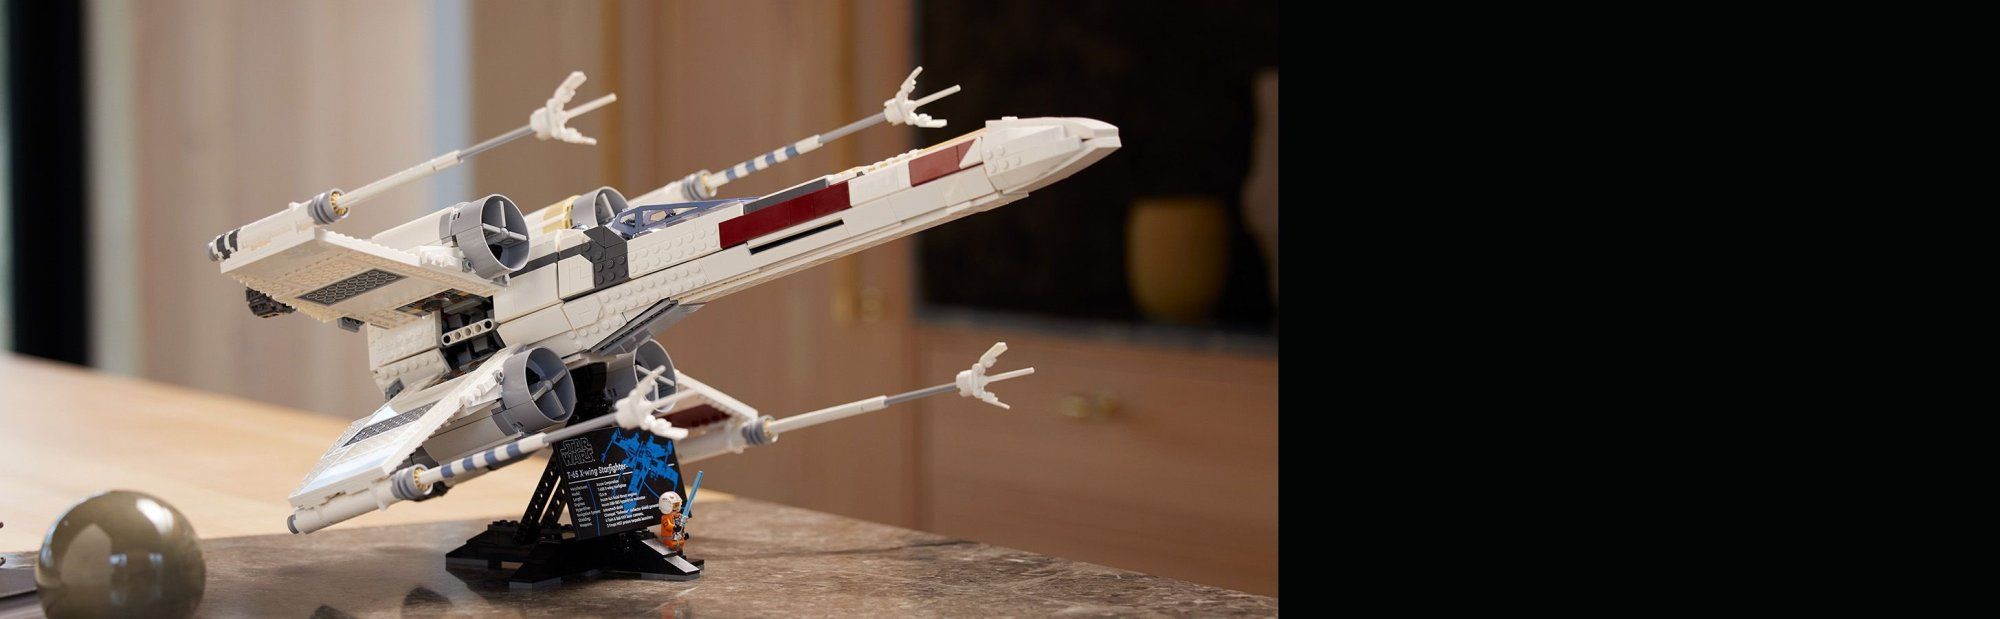 LEGO Star Wars 75355 Stíhačka X-wing